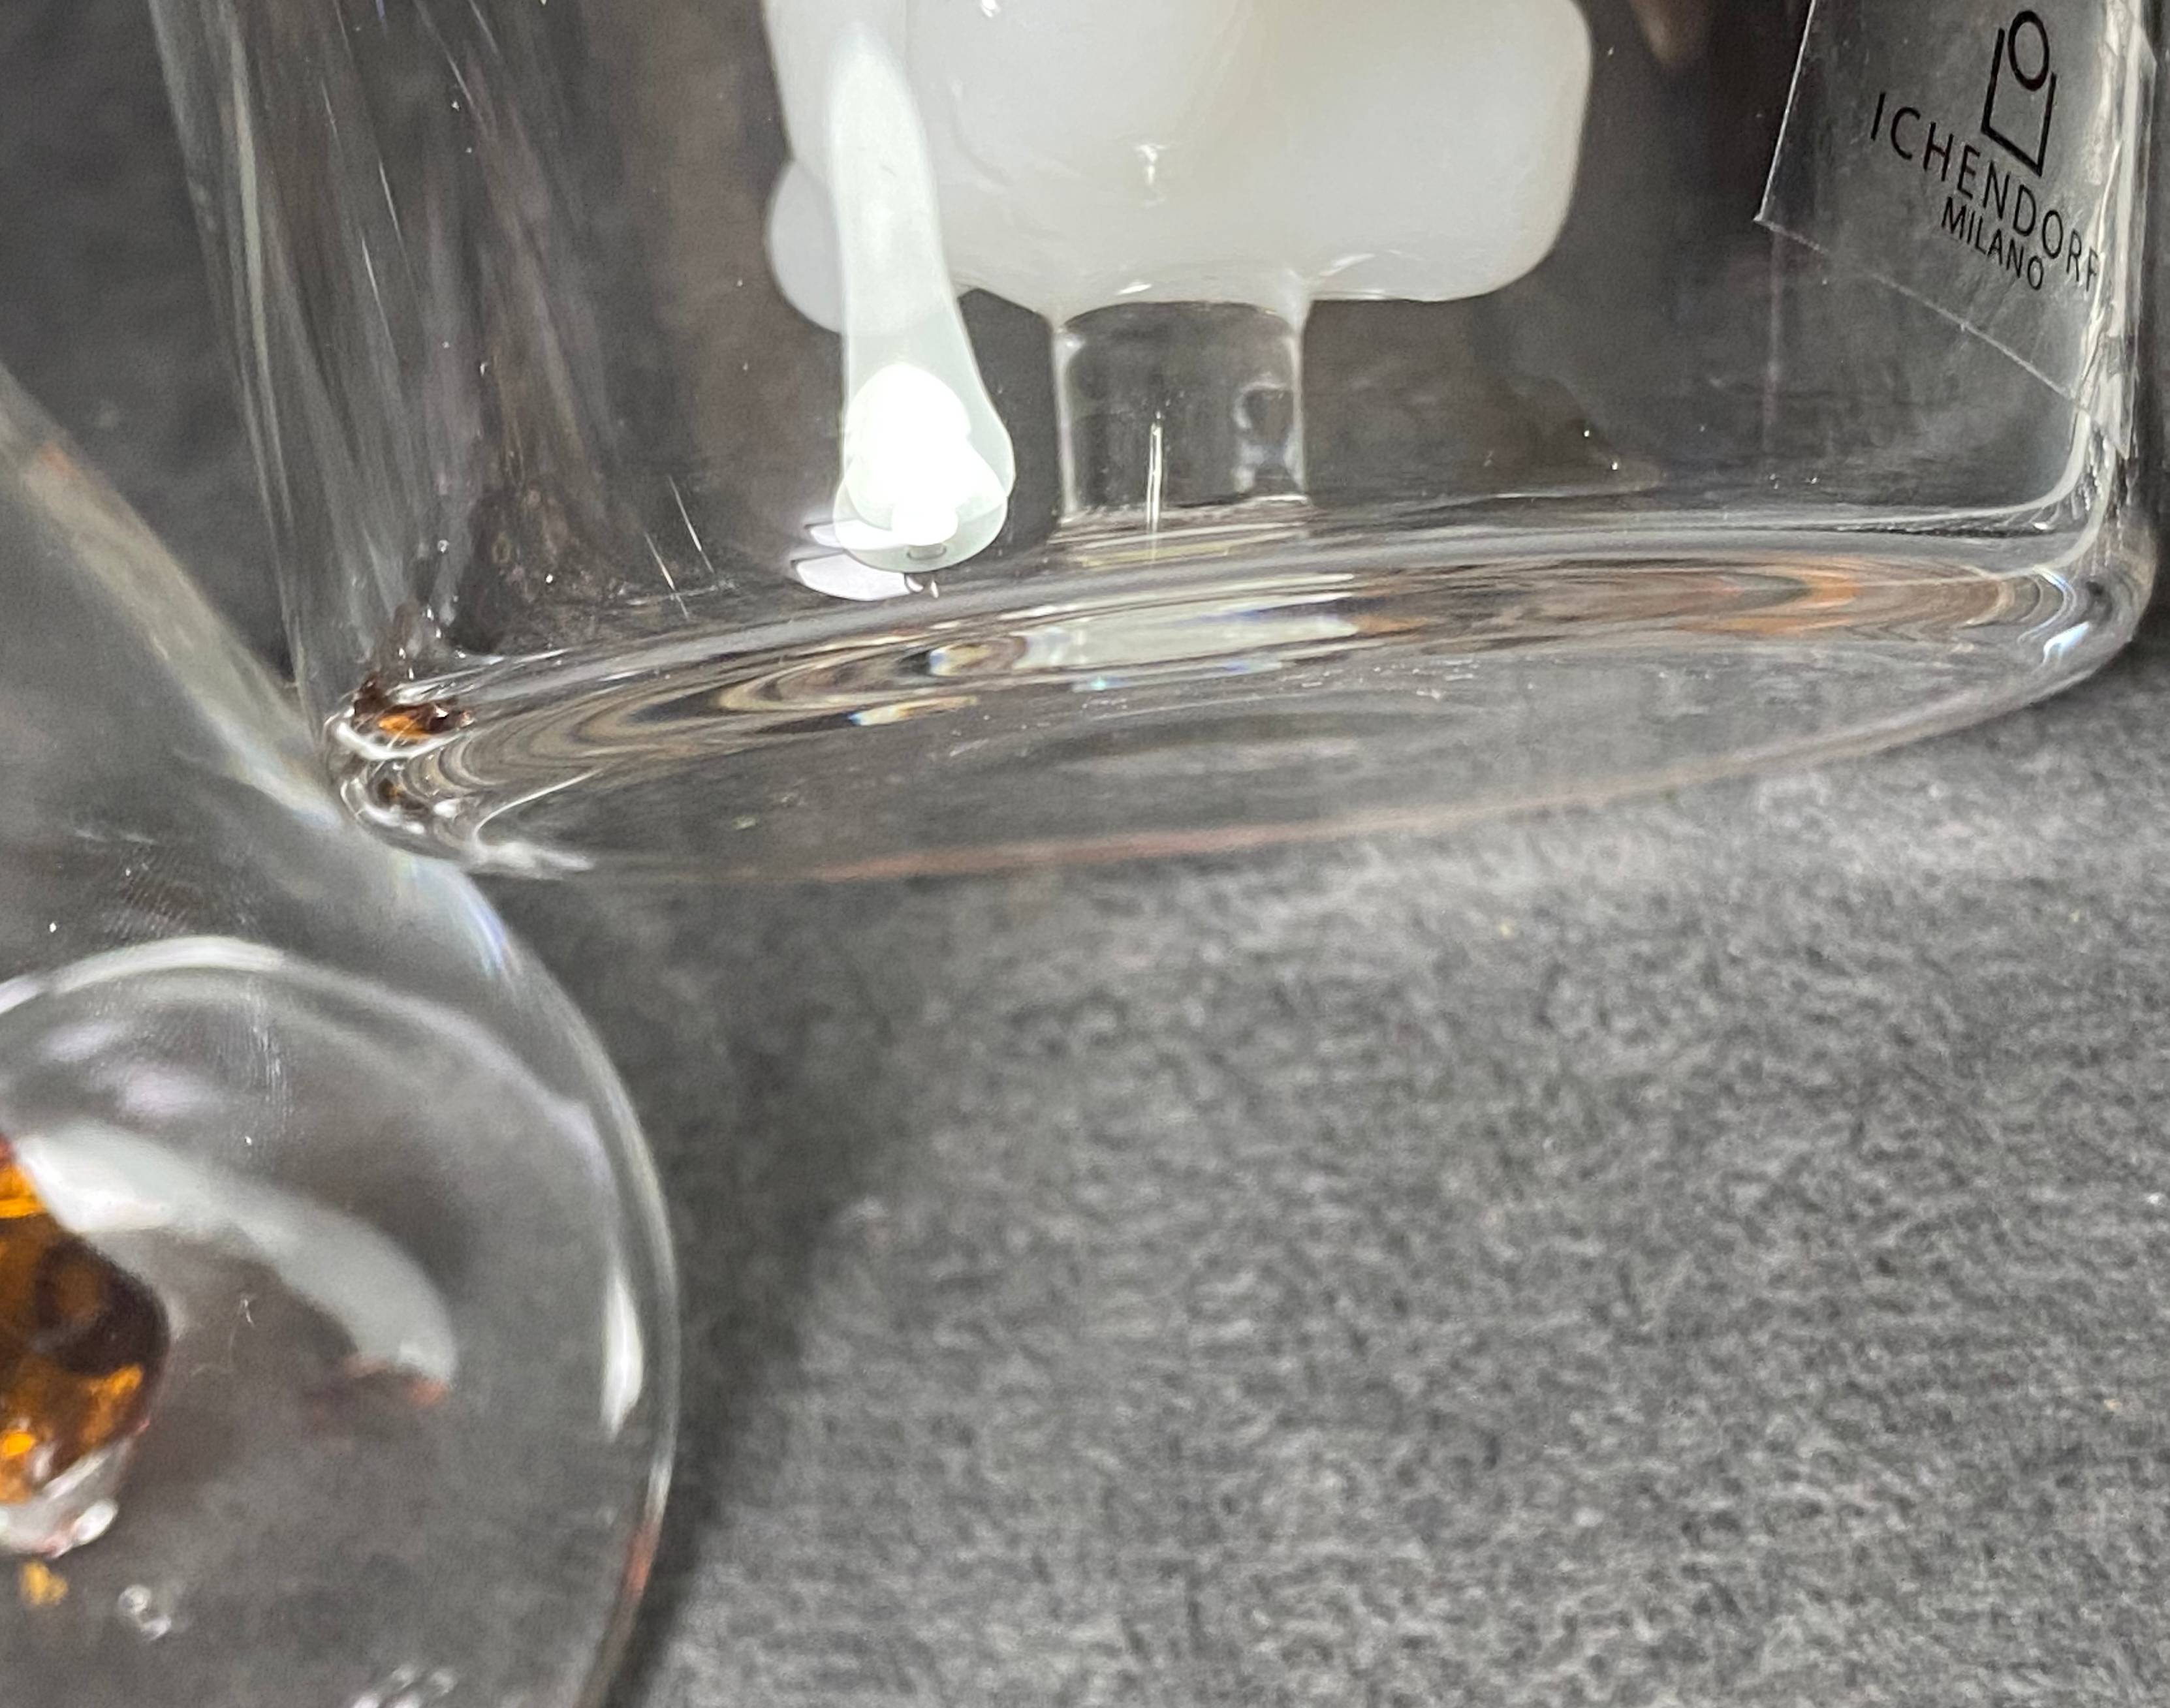 화이트 베어 컵 내부에 화이트 베어 피규어가 고정된 연결부를 촬영한 사진